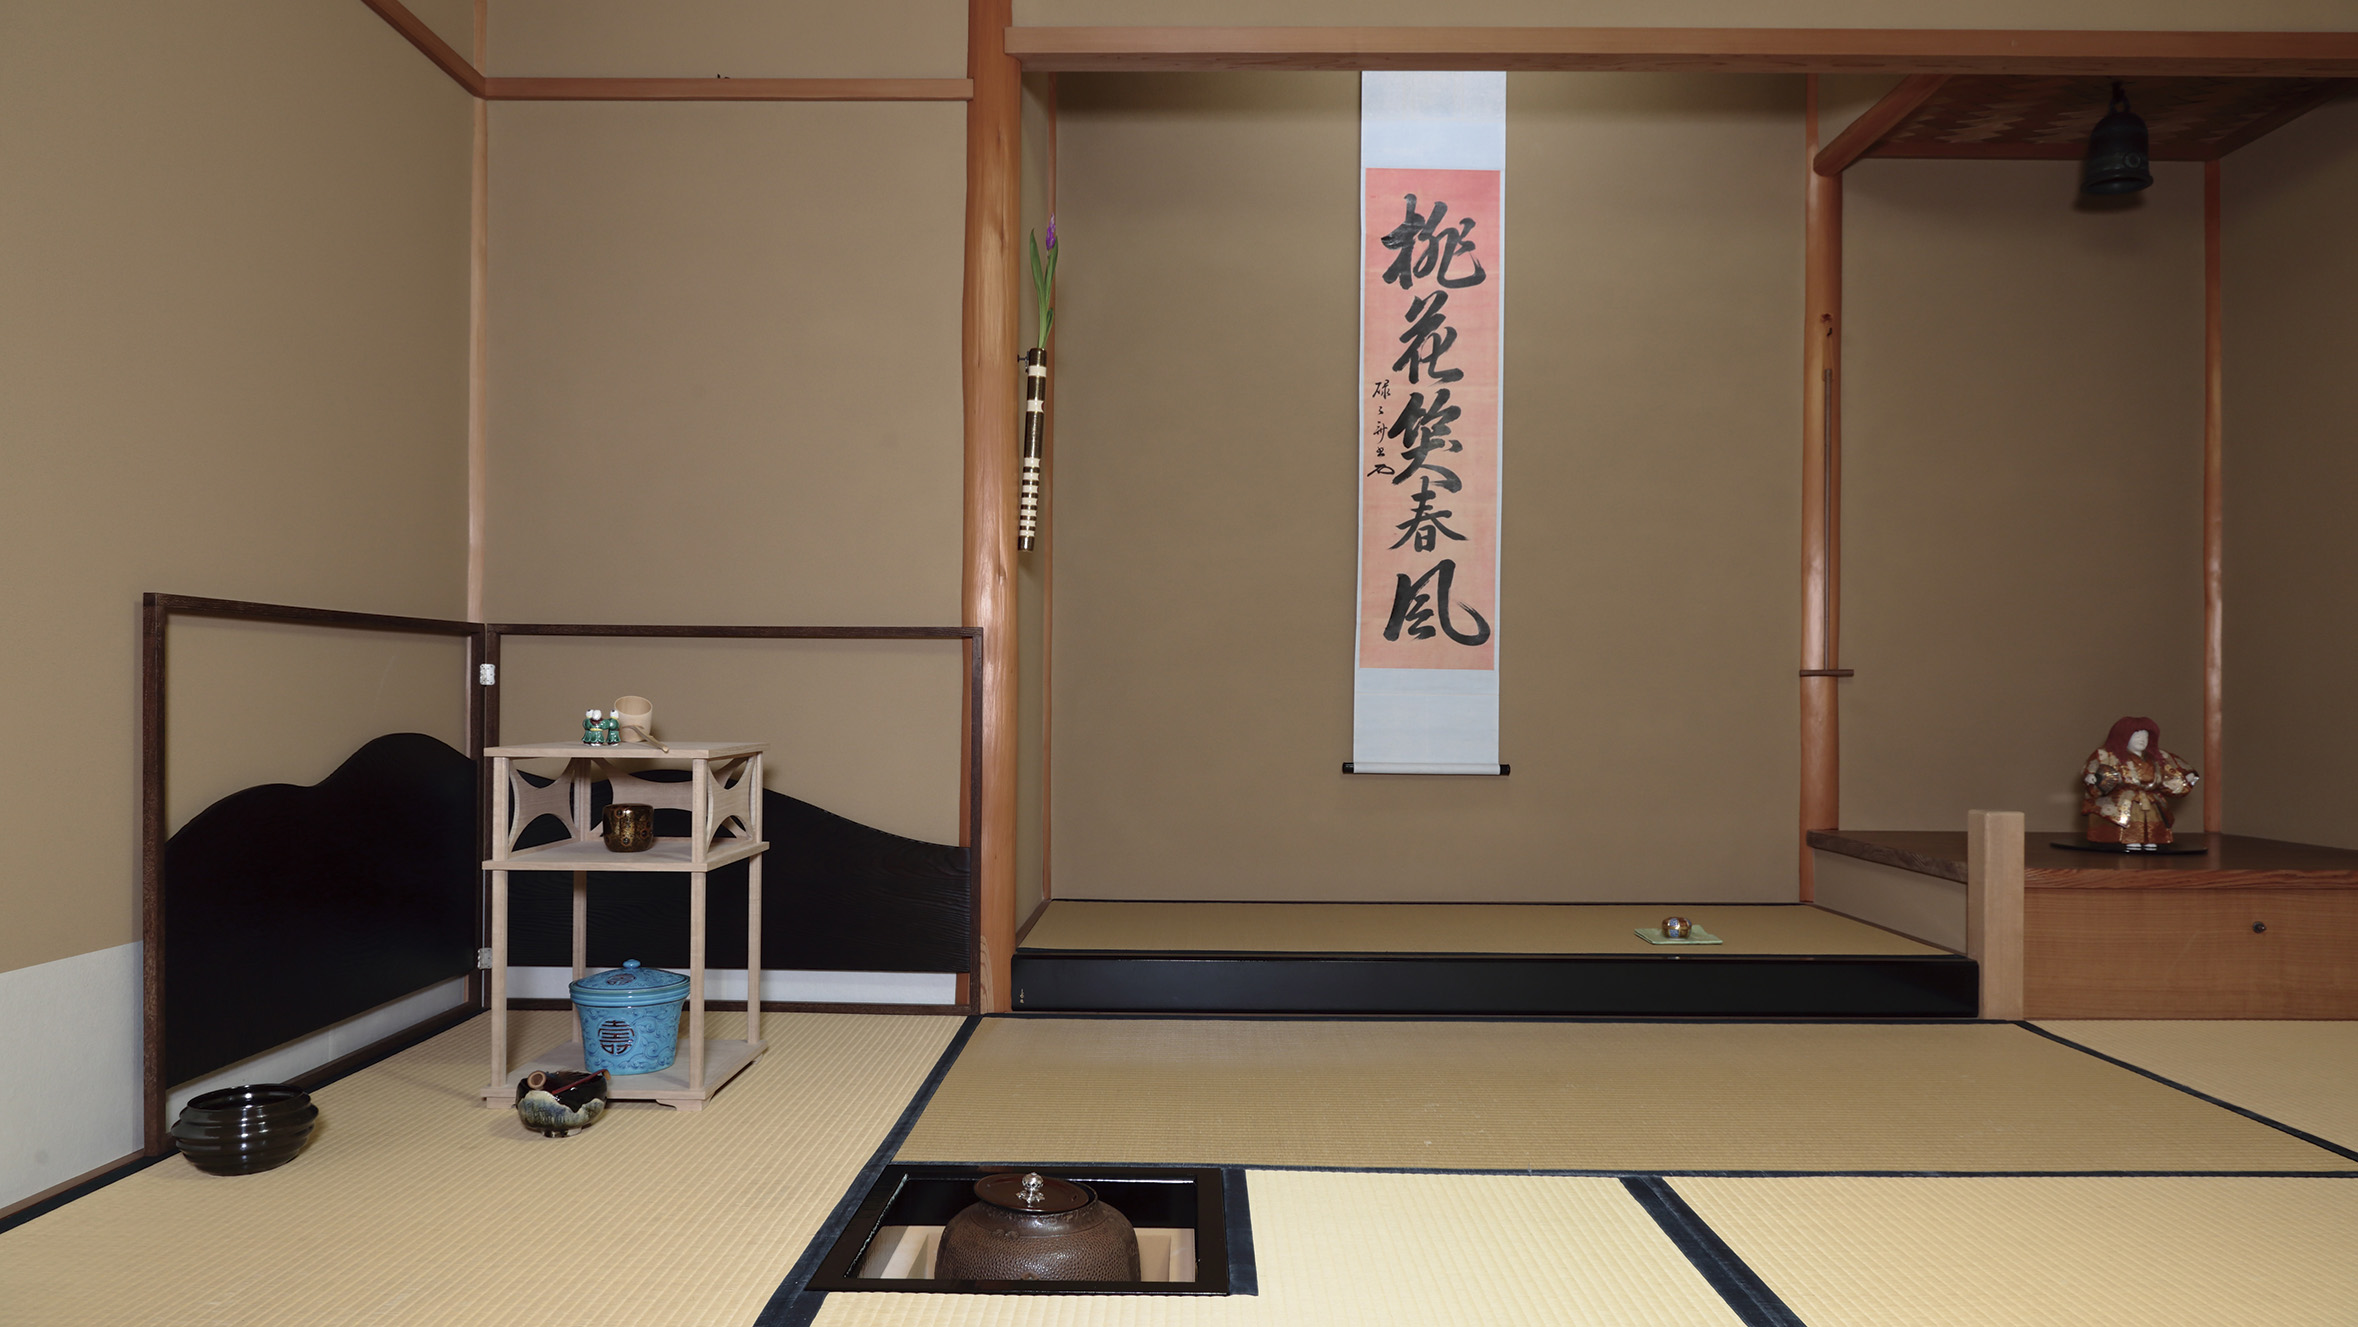 株式会社市田朝芳庵 – 大阪中央区にて茶道具の販売を行う会社です